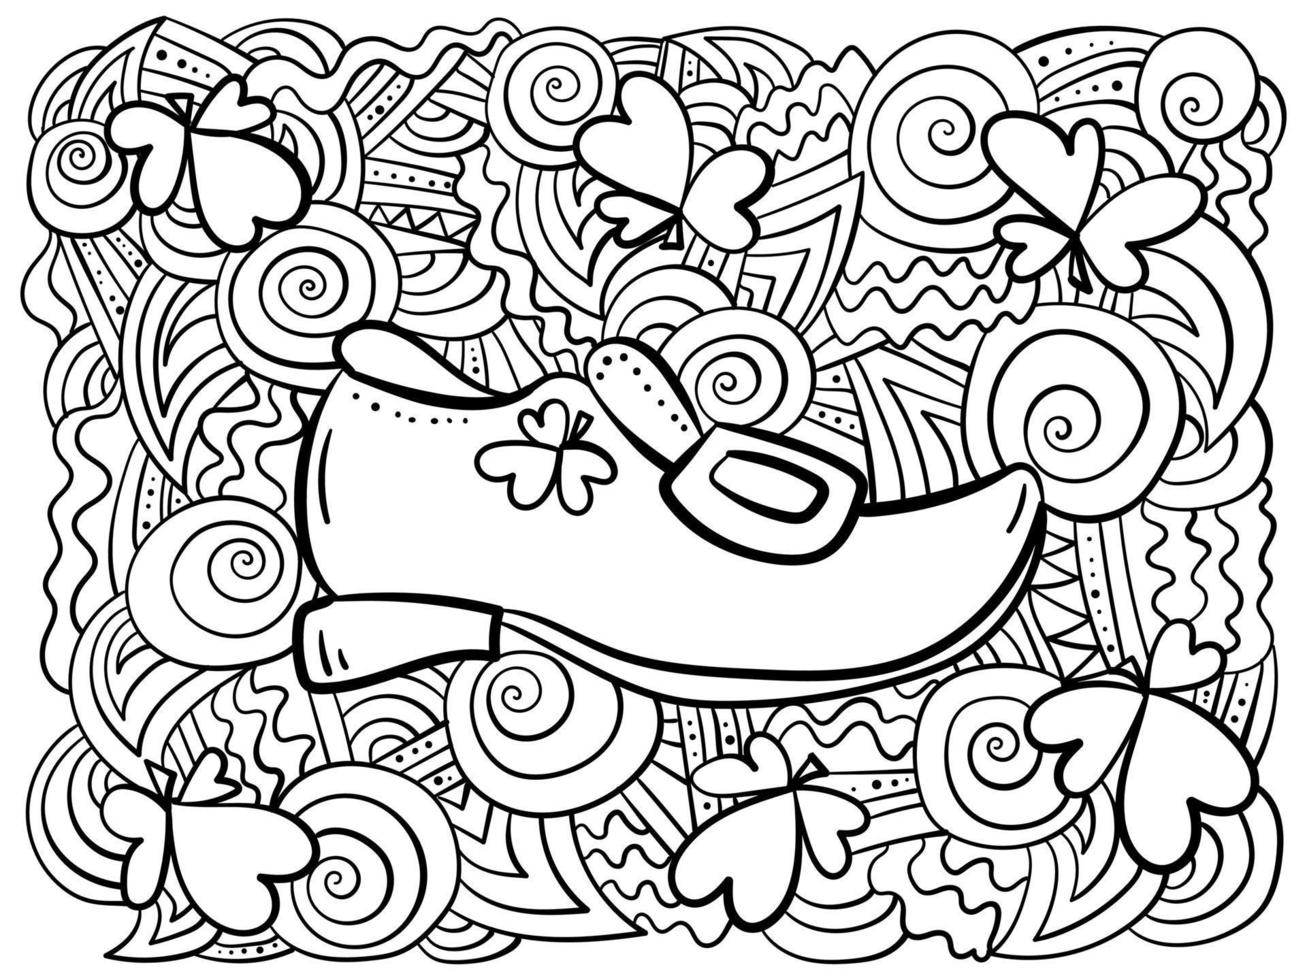 pyssling sko med vitklöver klöver för Bra tur och fantasi mönster rader, antistress st. Patricks dag färg sida vektor